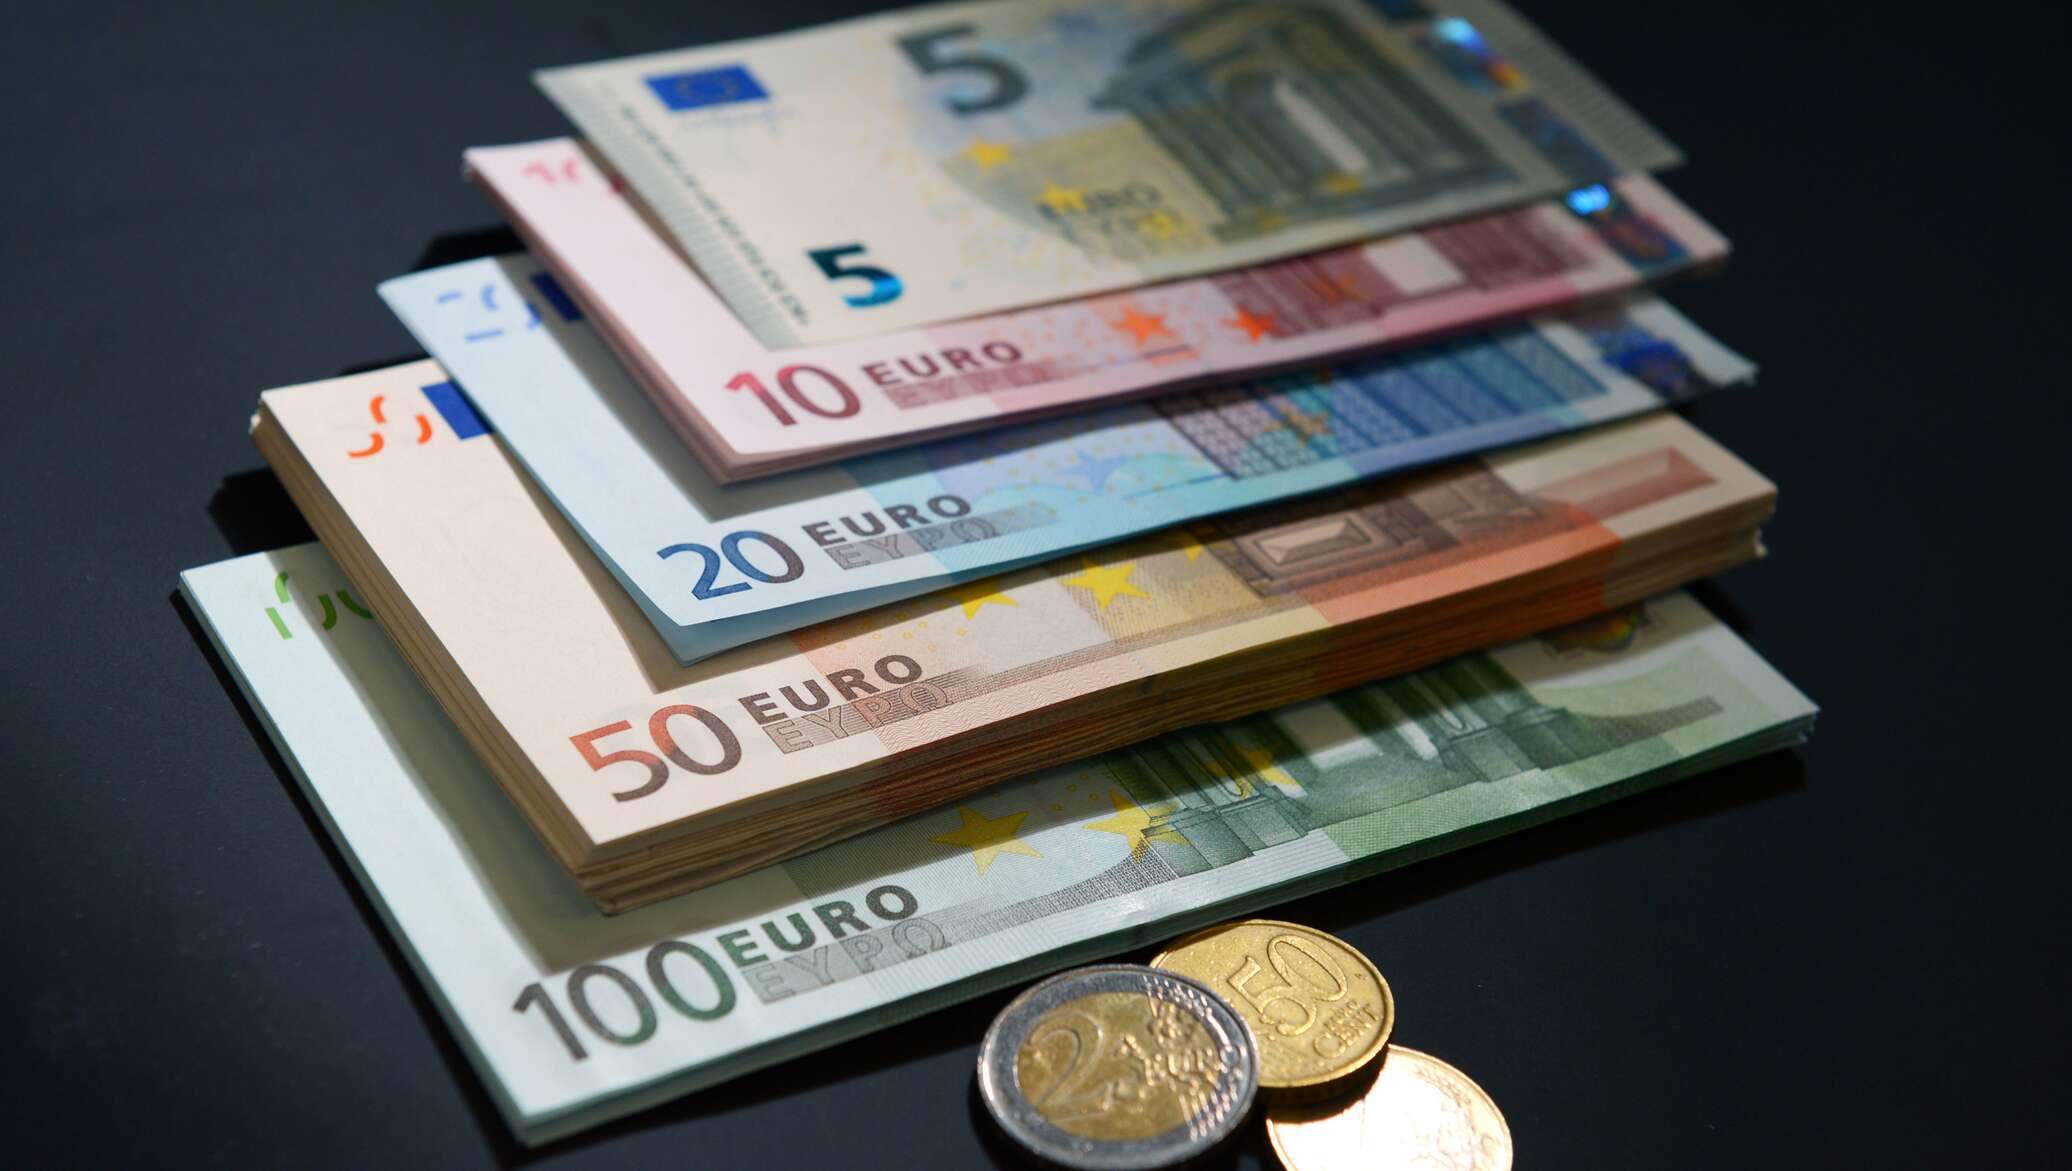 Наличный евро в спб